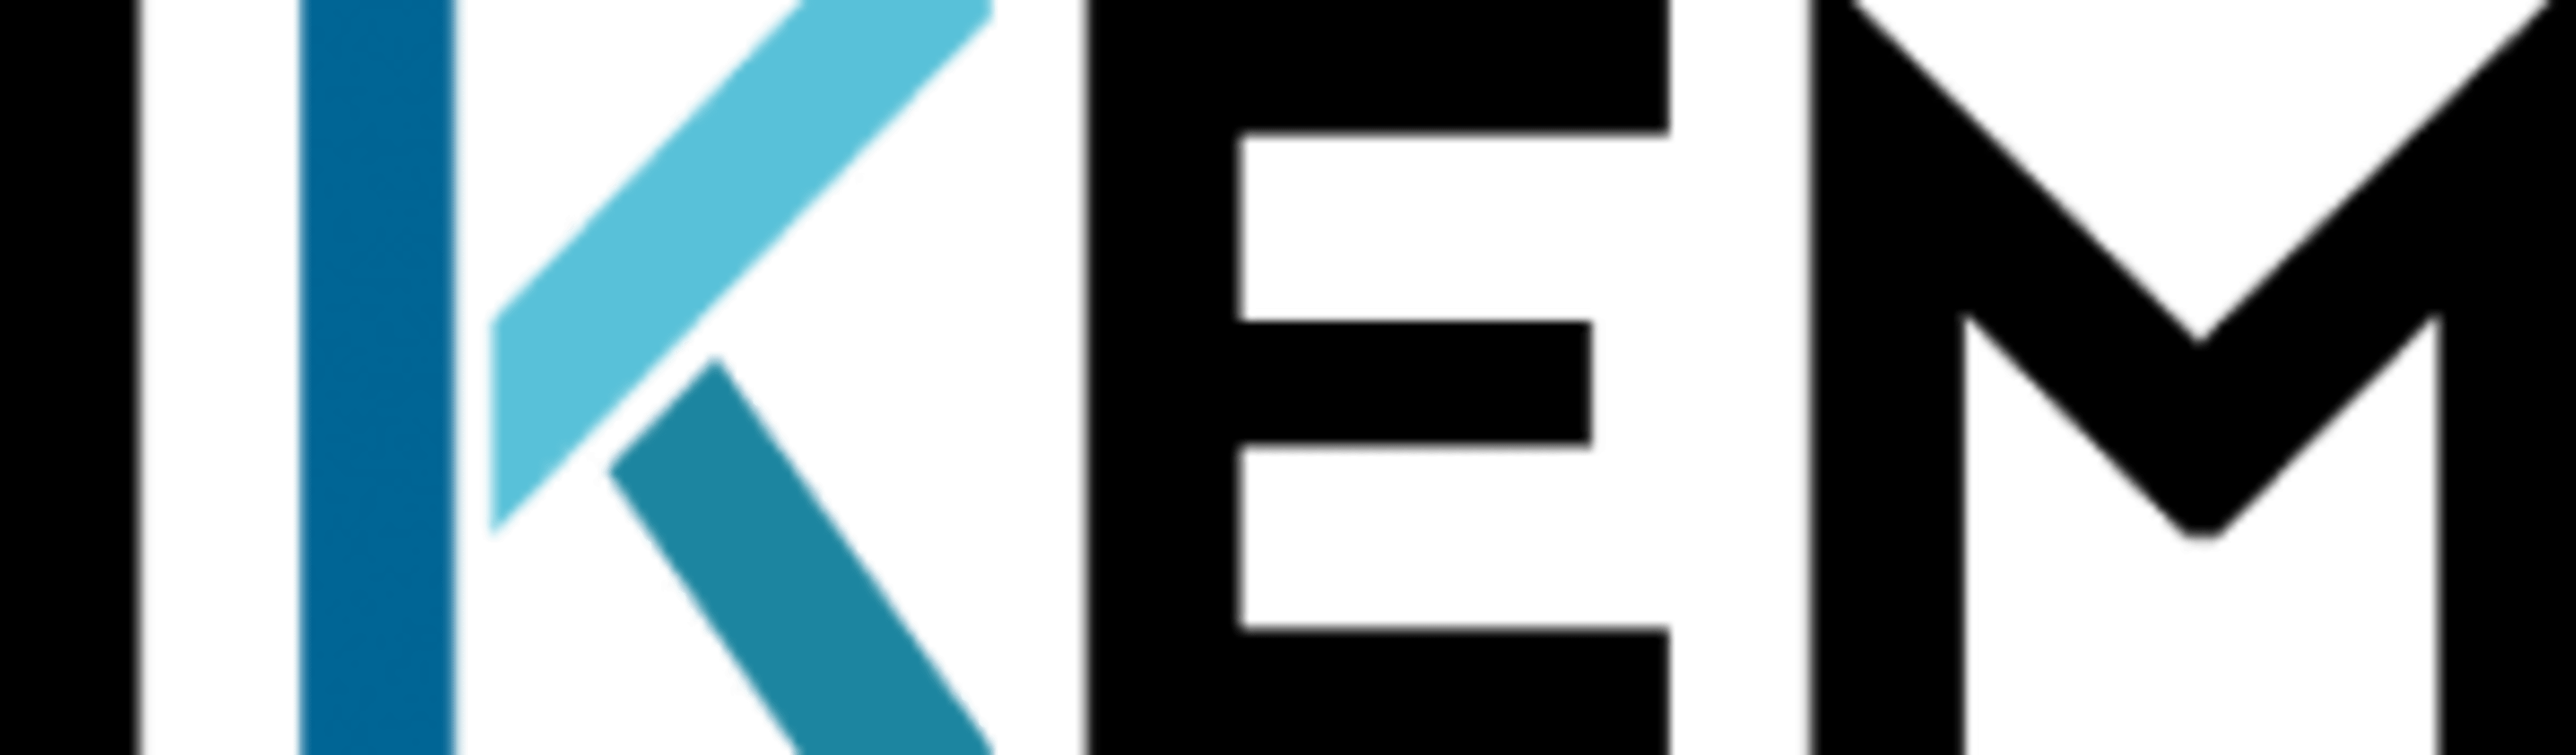 Institut für Klimaschutz, Energie & Mobilität logo